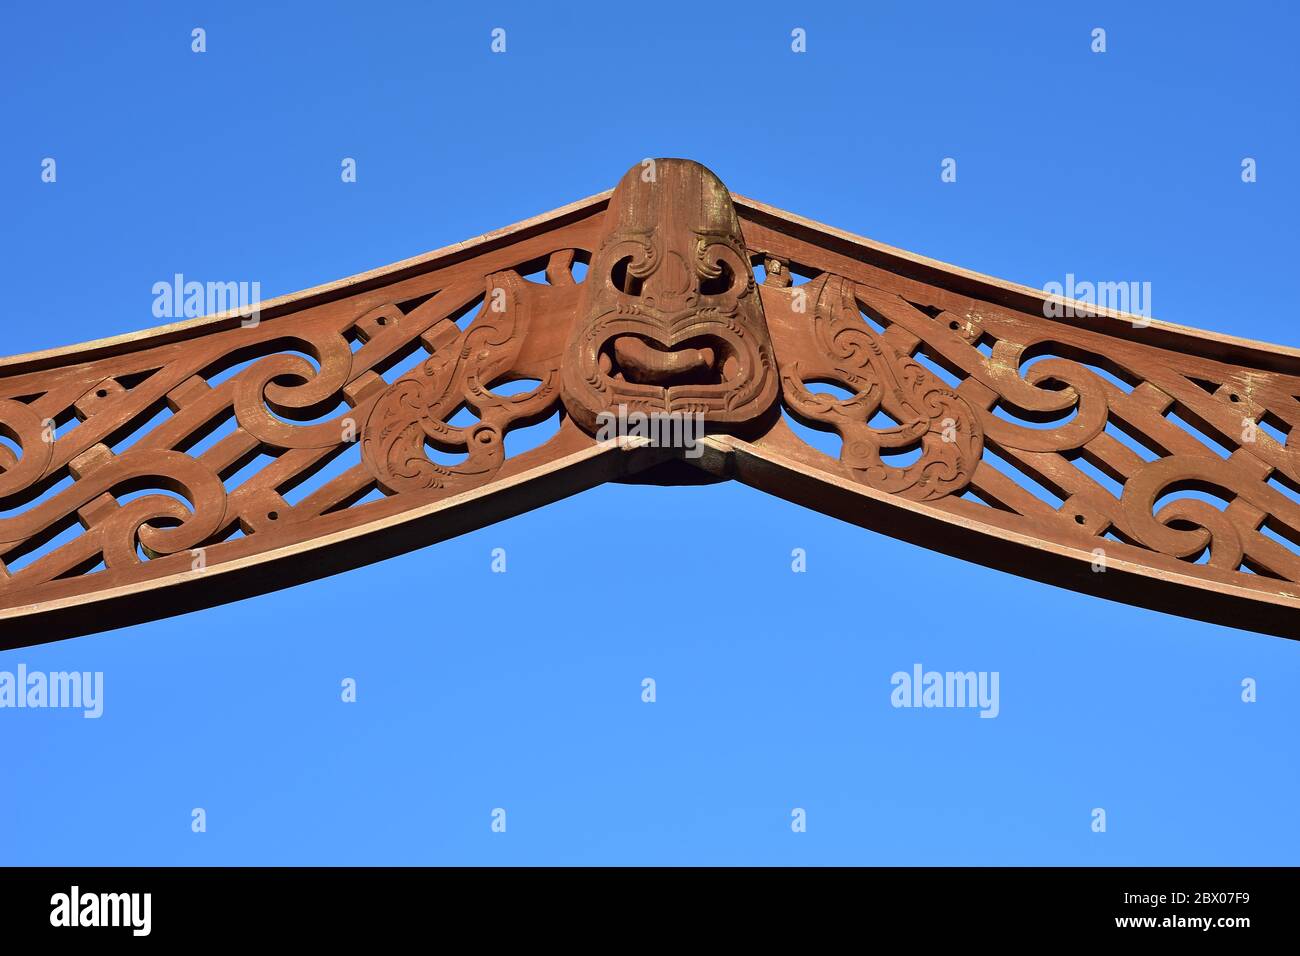 Arche en bois avec sculptures traditionnelles maories polynésiennes et quelques taches altérées. Banque D'Images